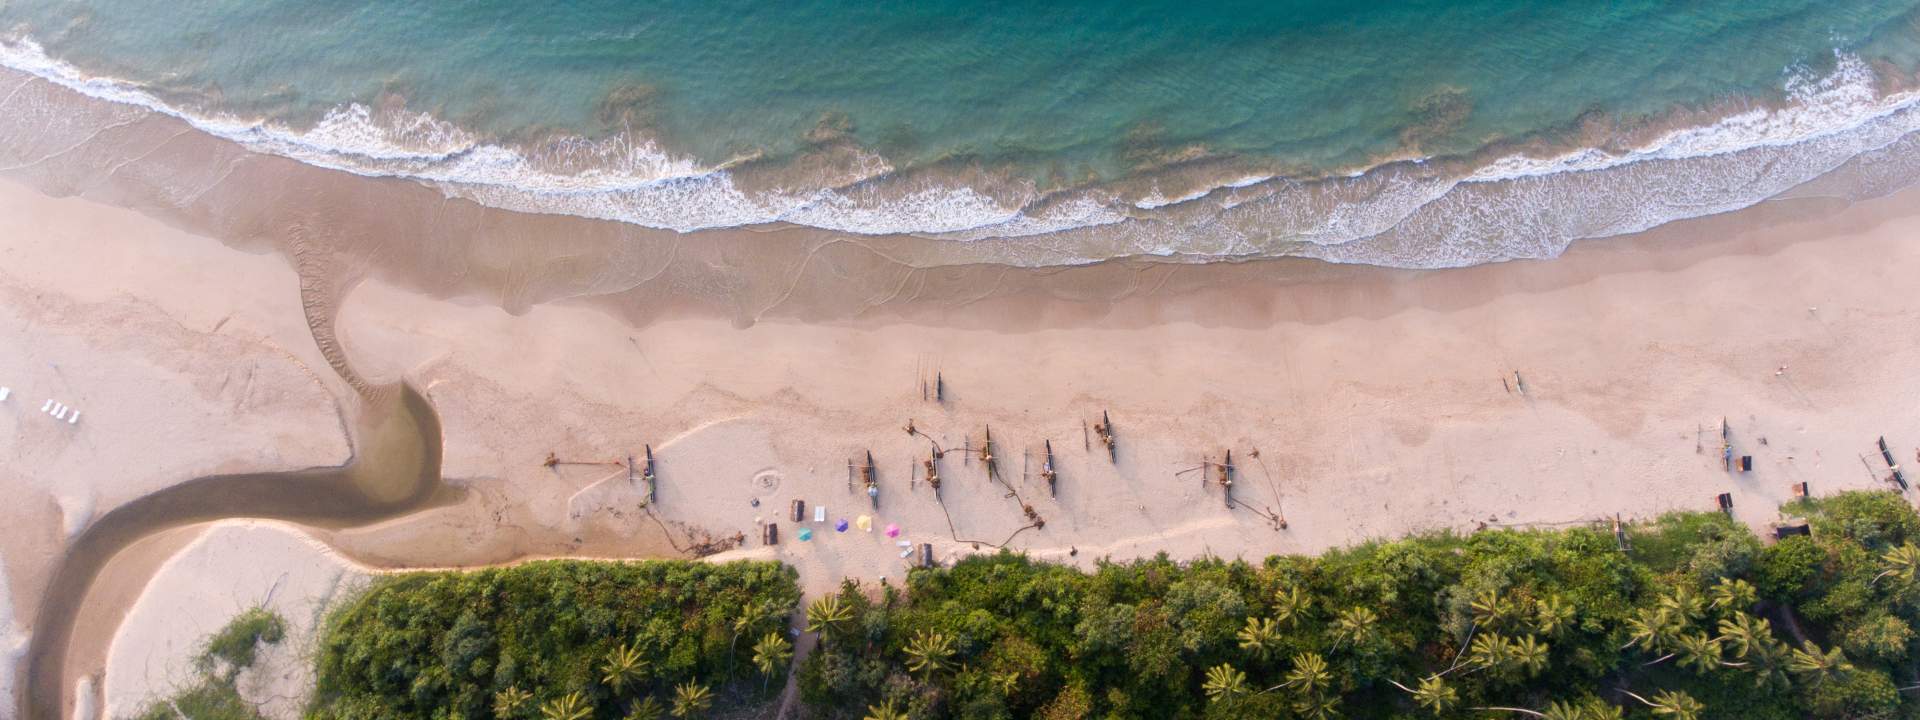 Une pause sur la côte préservée du Sri Lanka